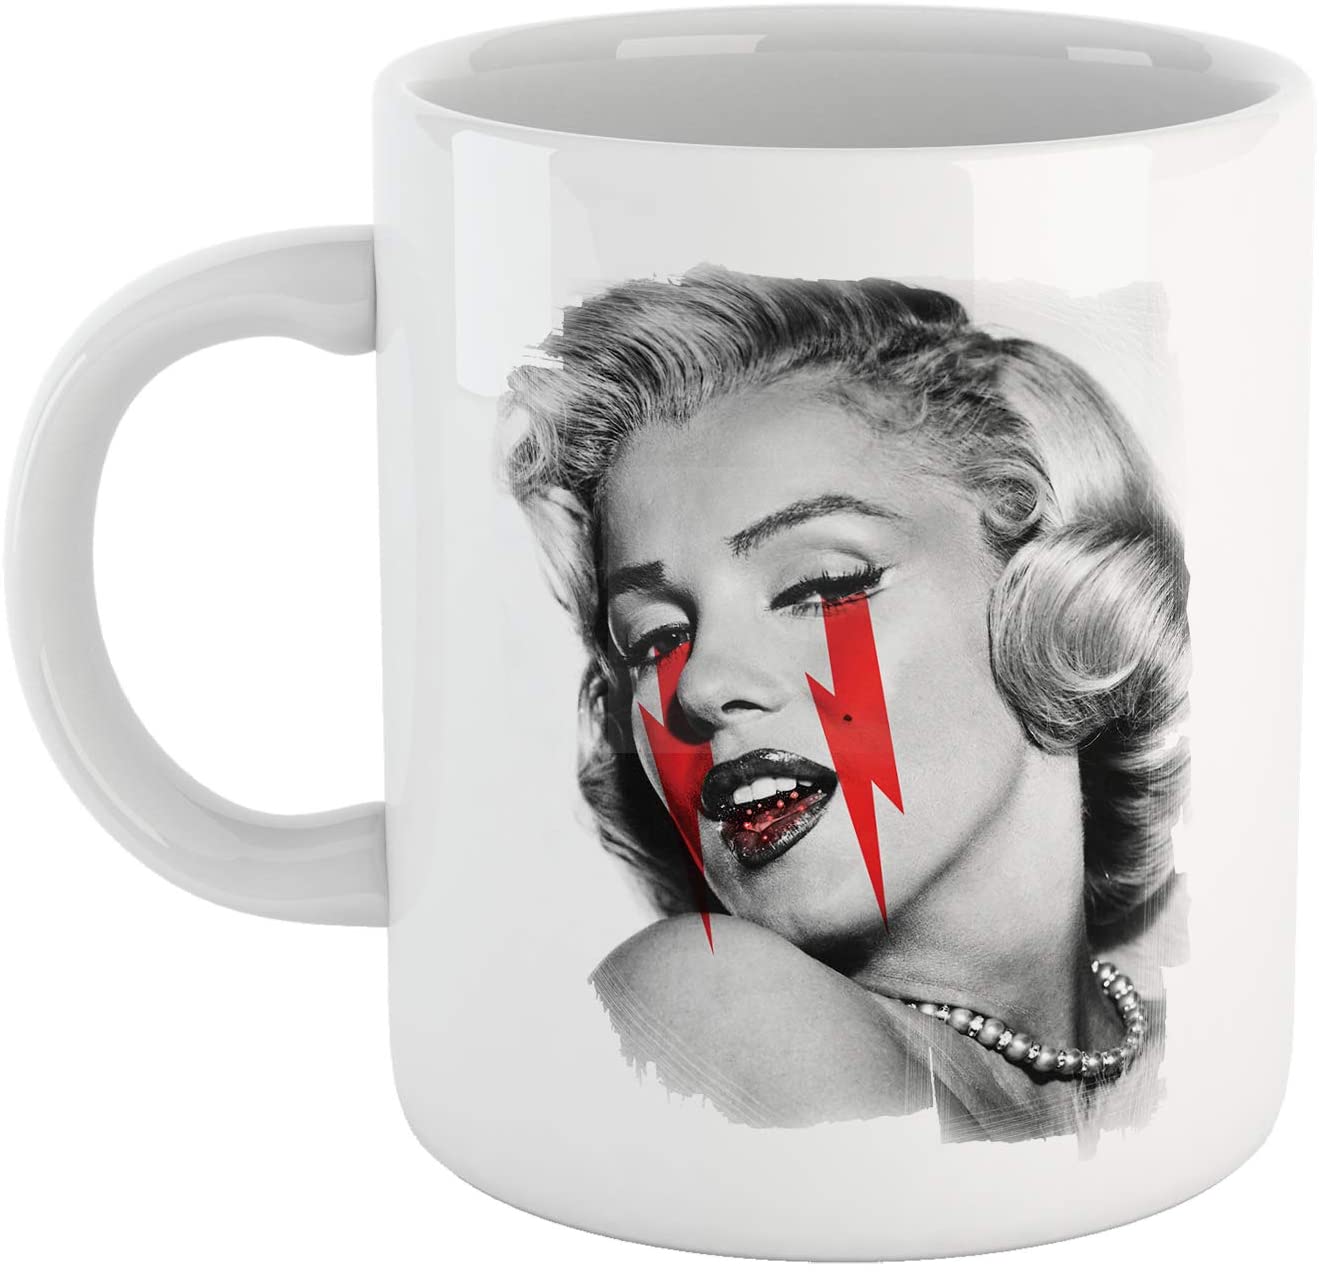 Gray Tazza Marilyn Fashion Monroe - Immagine della Diva Anni 70 - Choose ur Color Cuc shop